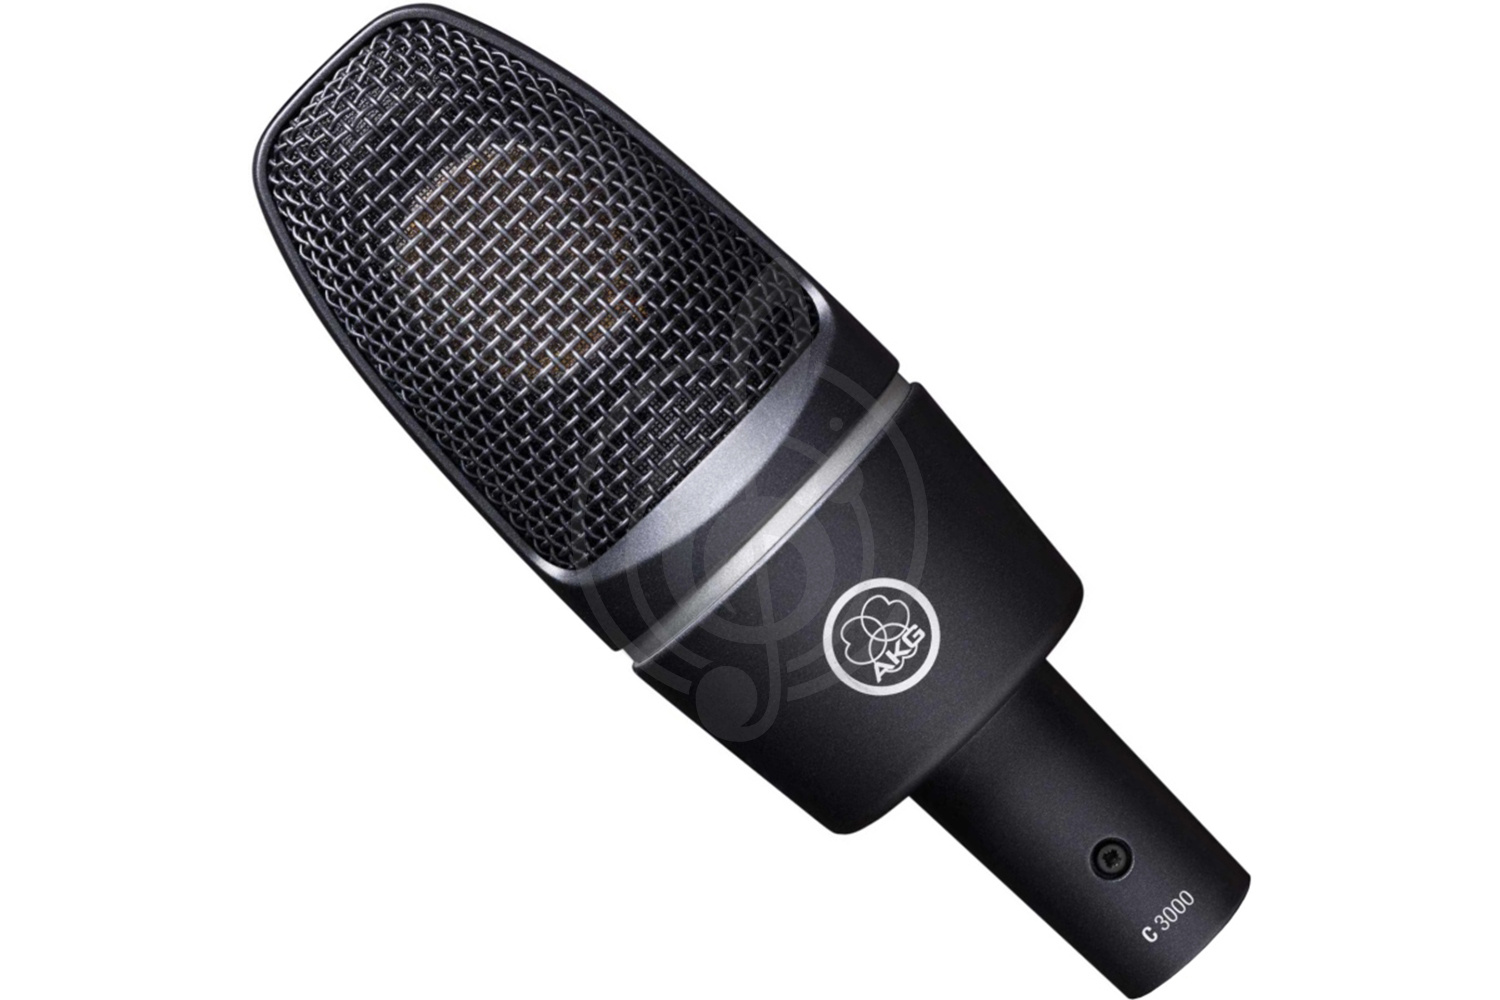 Конденсаторный студийный микрофон Конденсаторные студийные микрофоны AKG AKG C3000 - конденсаторный студийный микрофон C3000 - фото 1